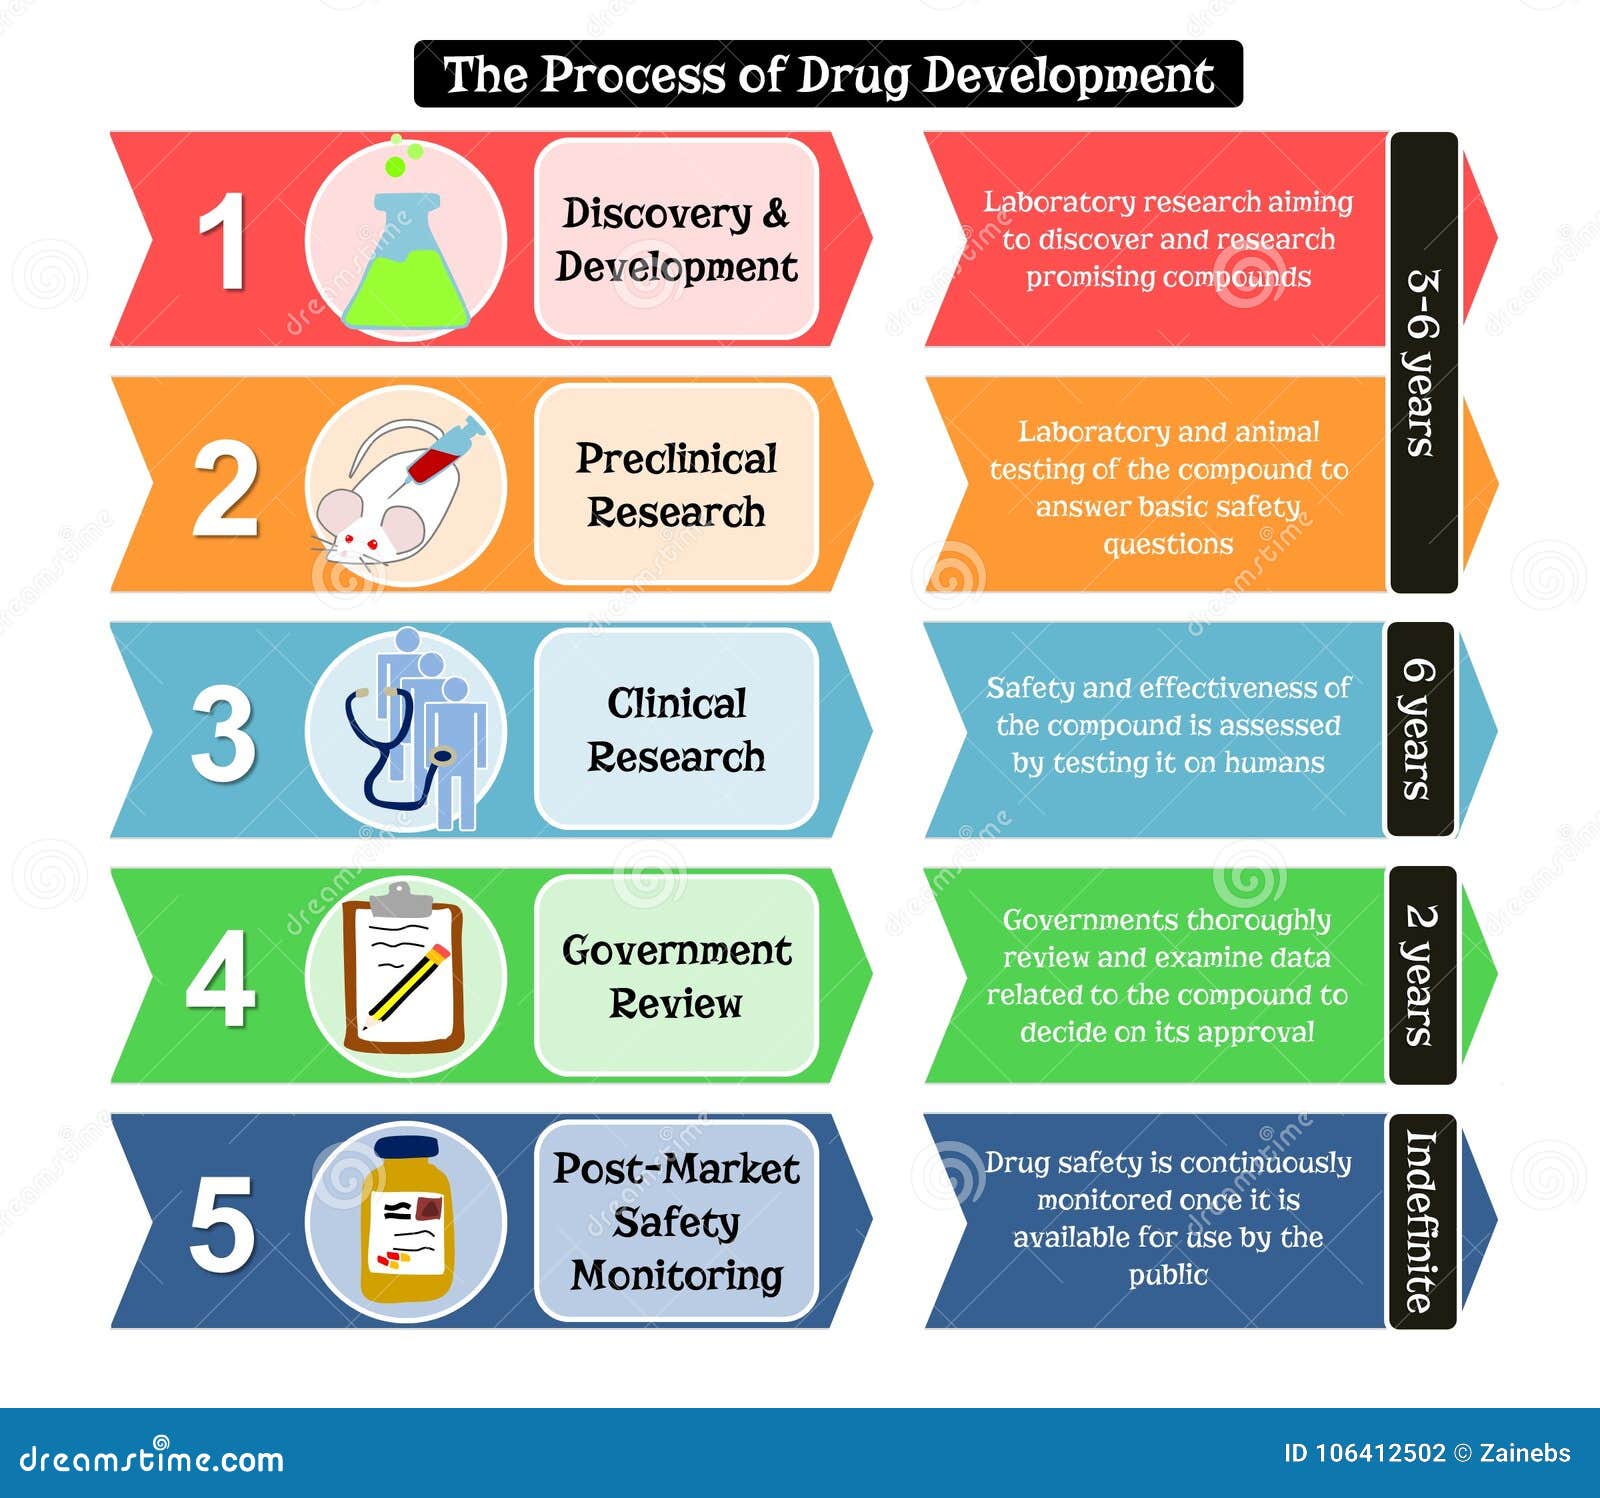 steps of drug development with details